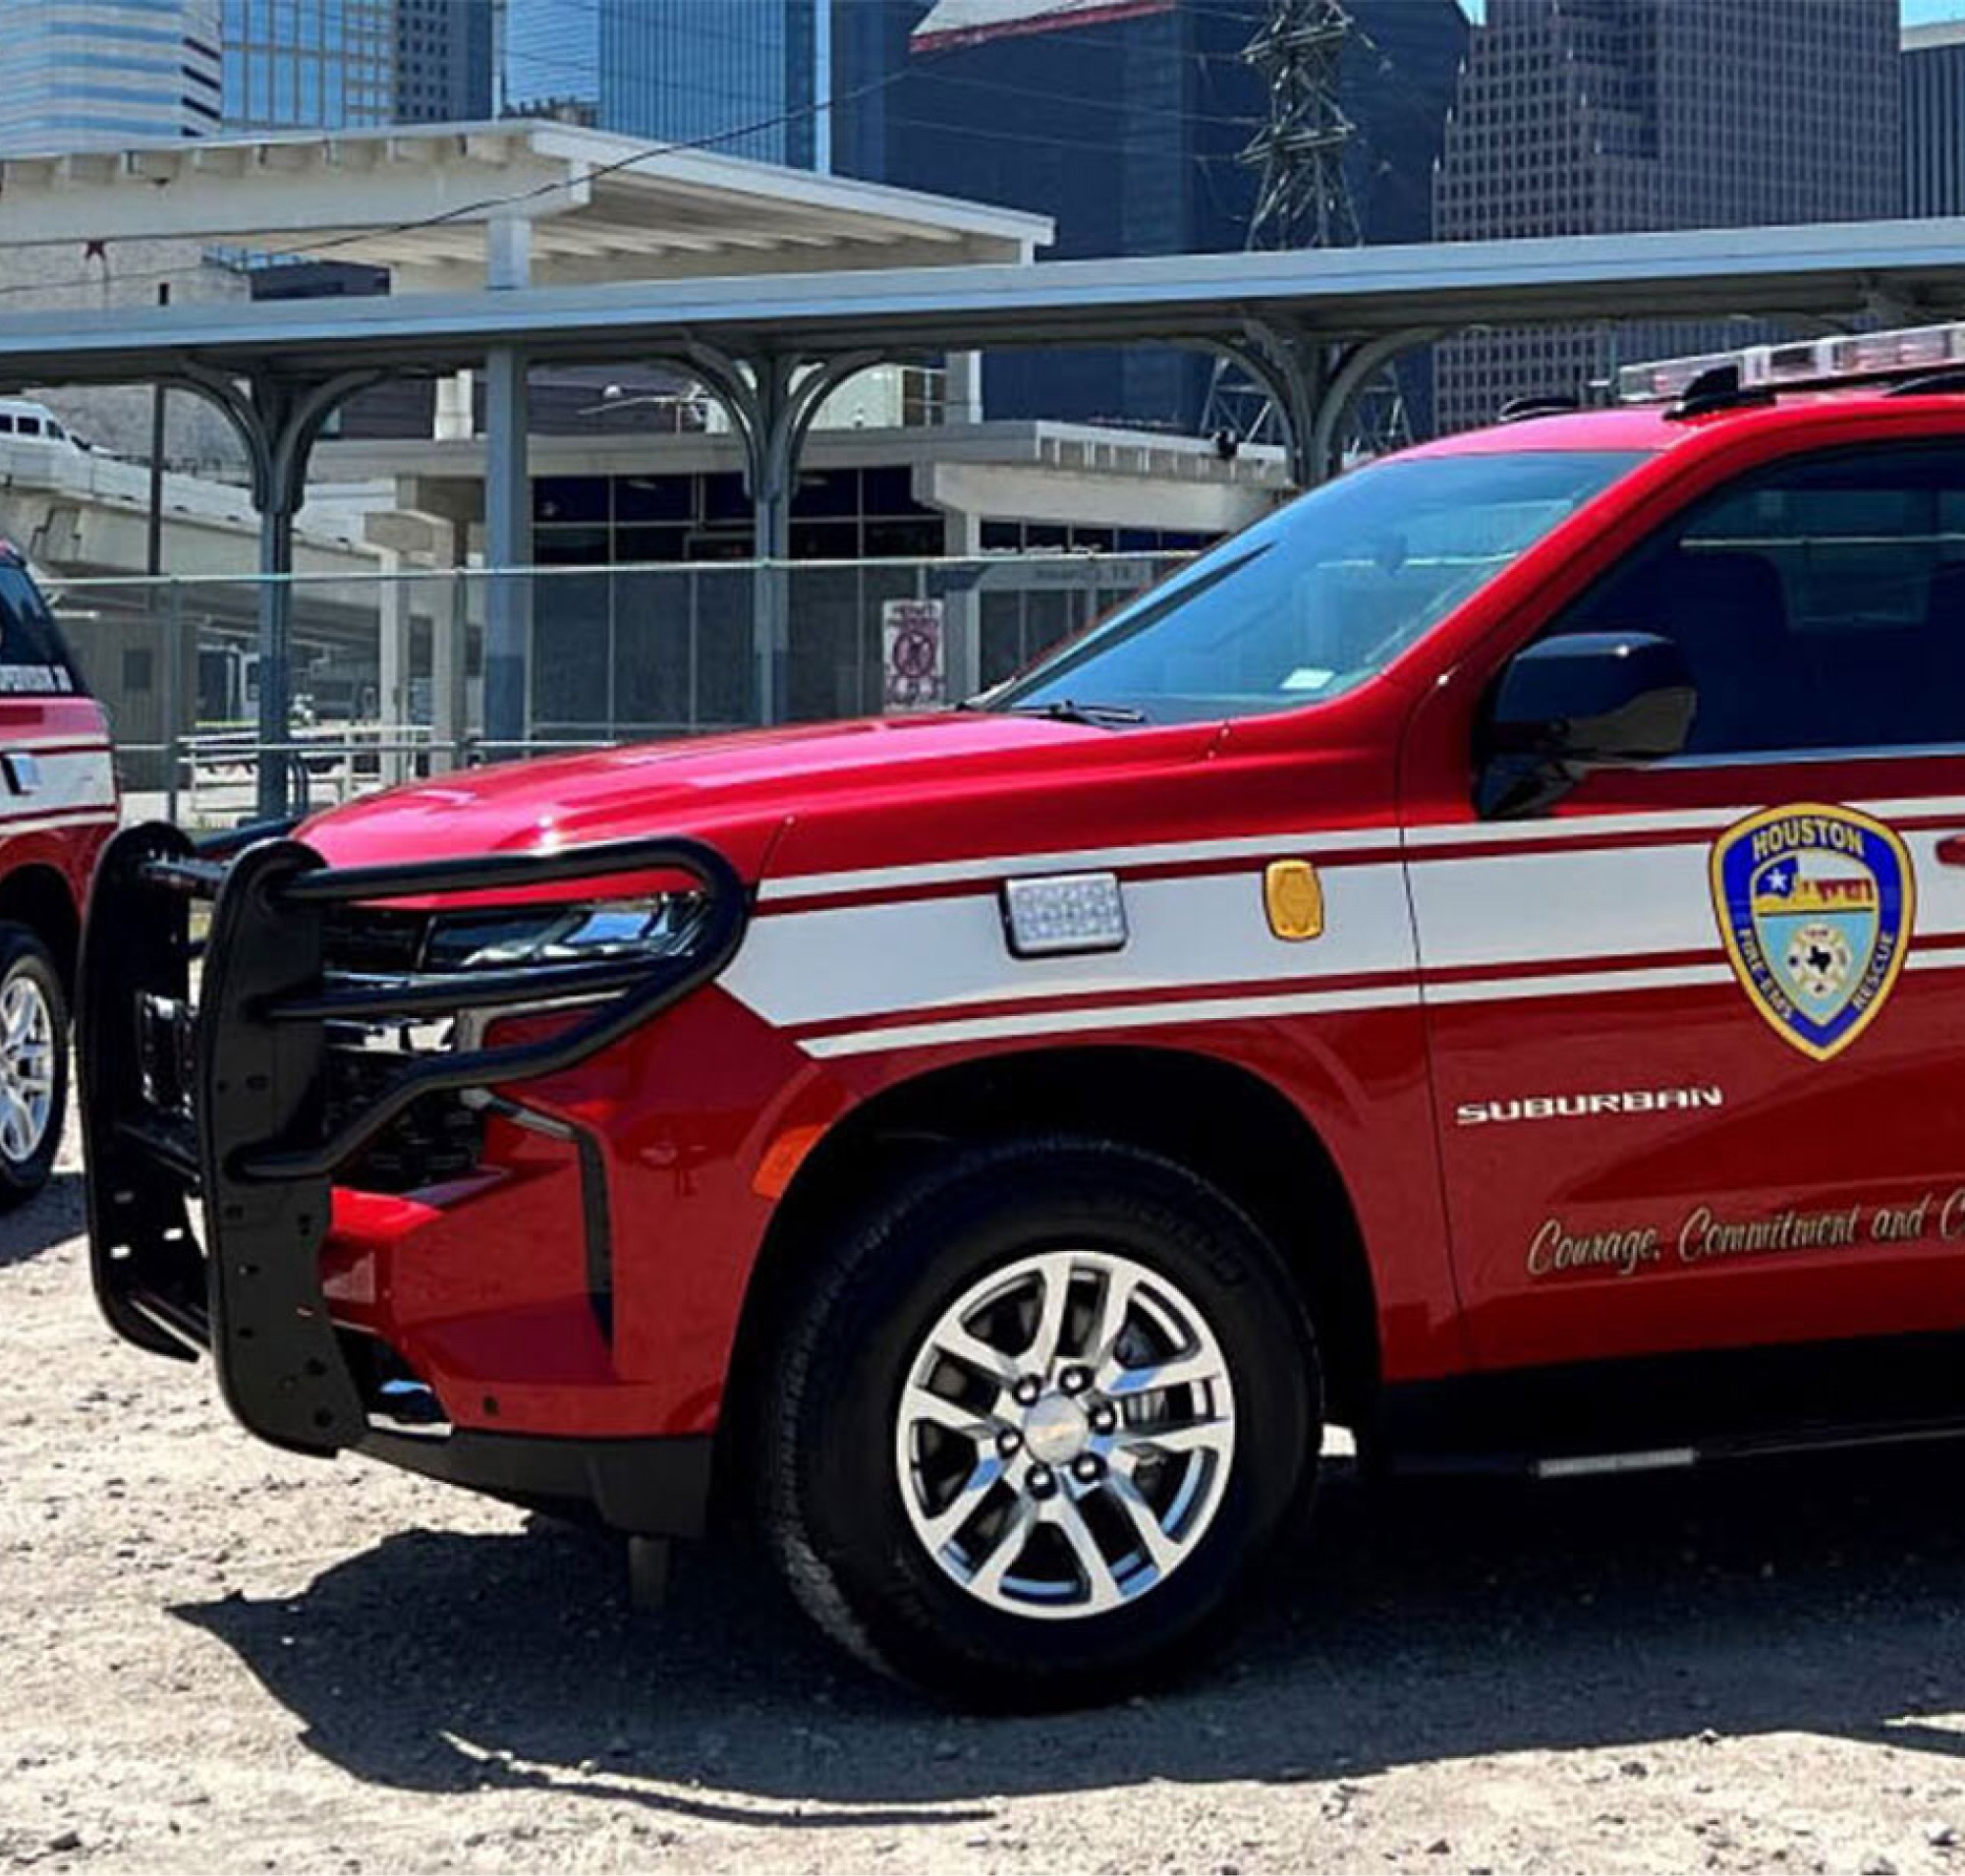 Czerwona furgonetka Staży Pożarnej miasta Houston zaparkowana na zewnątrz z budynkami miejskimi w tle.